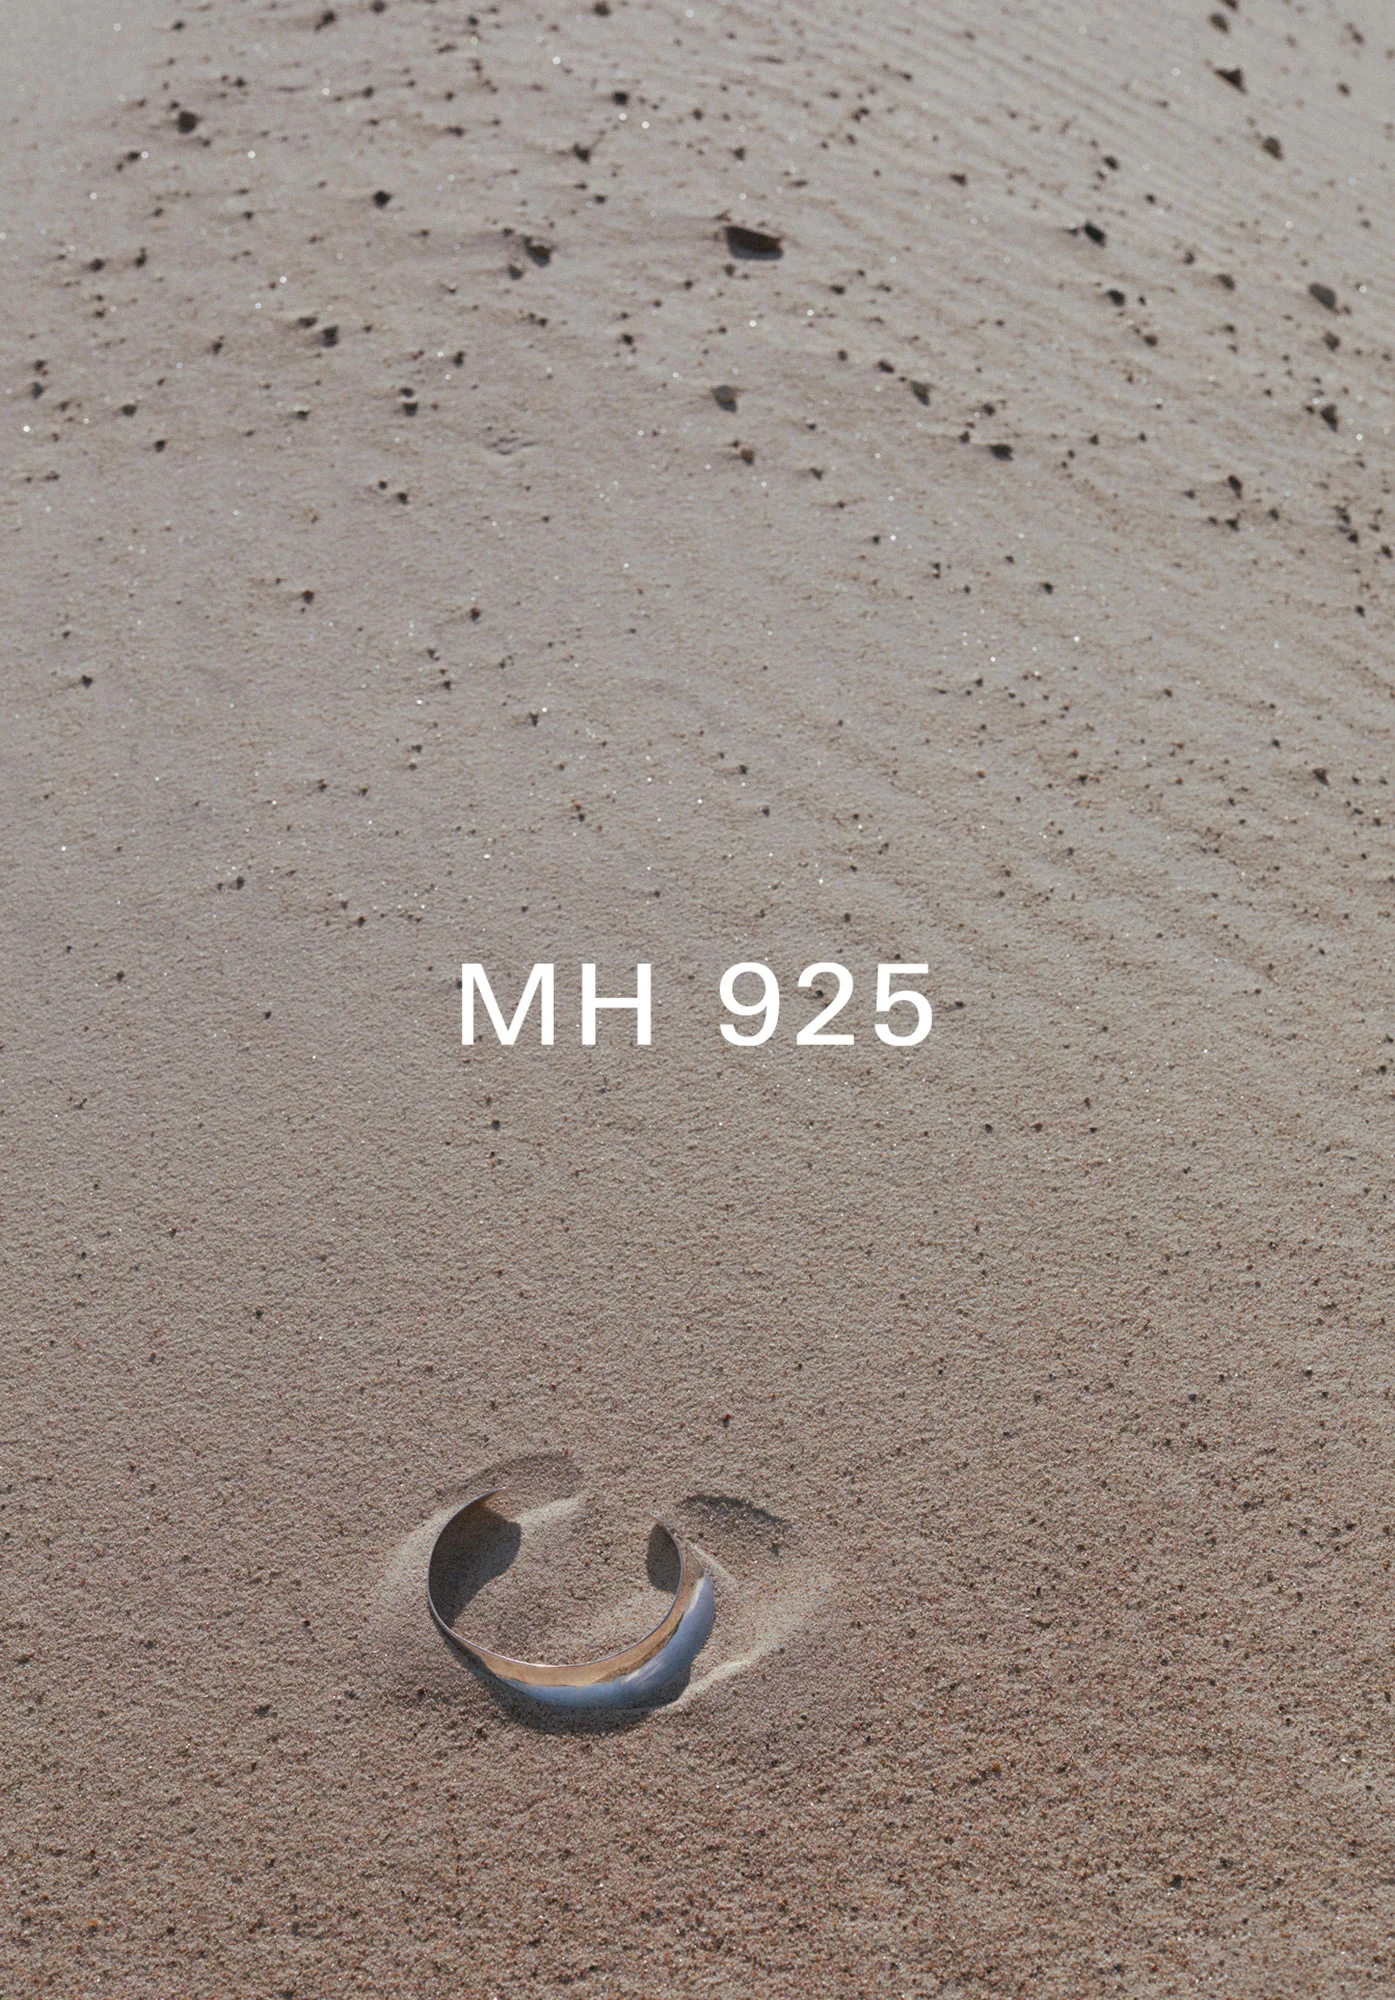 MH 925 12 by Rickard SUND